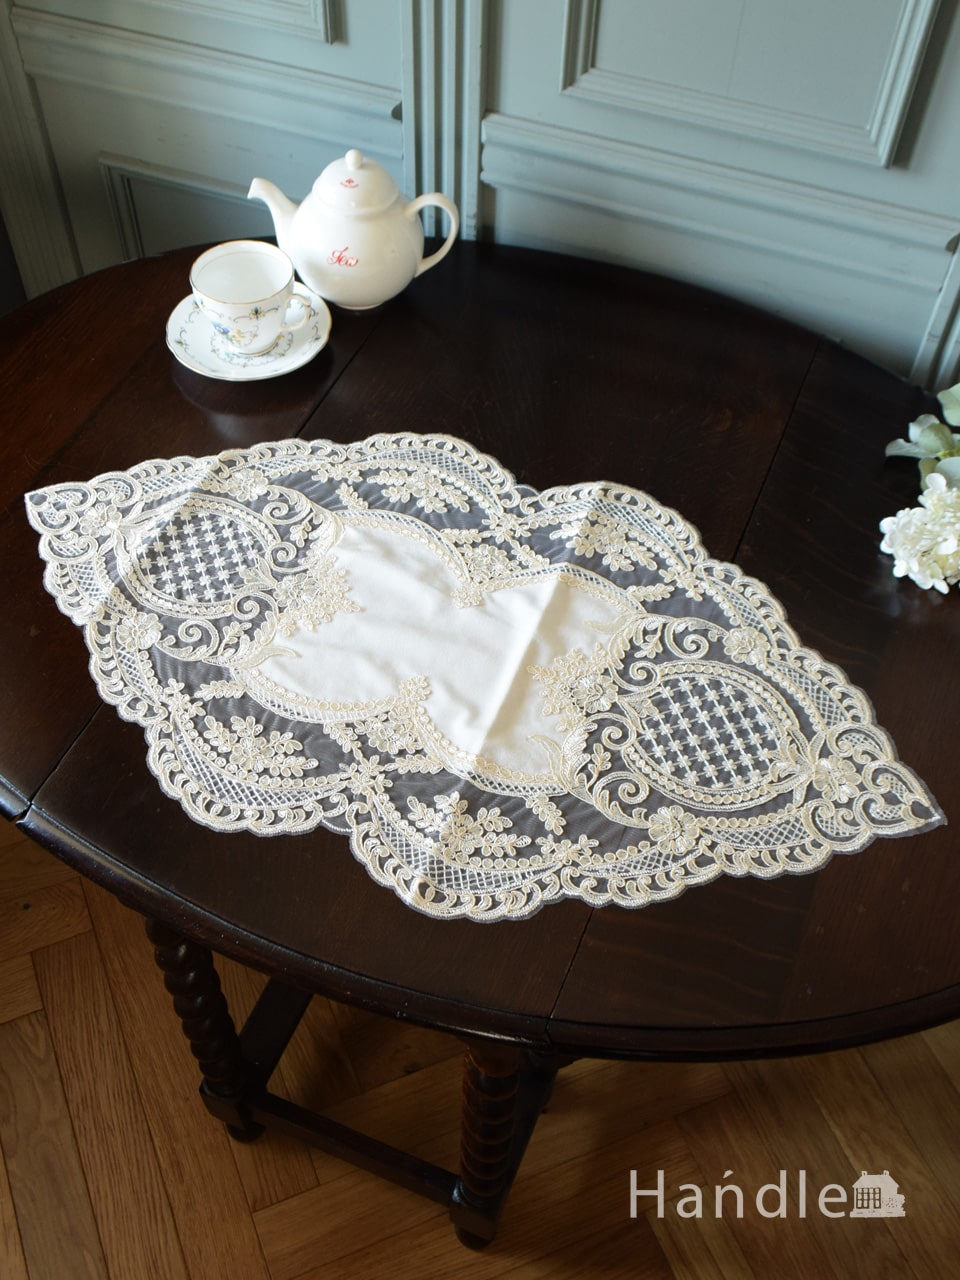 フランスアンティーク風のおしゃれなテーブルクロス、華やかな刺繍の 